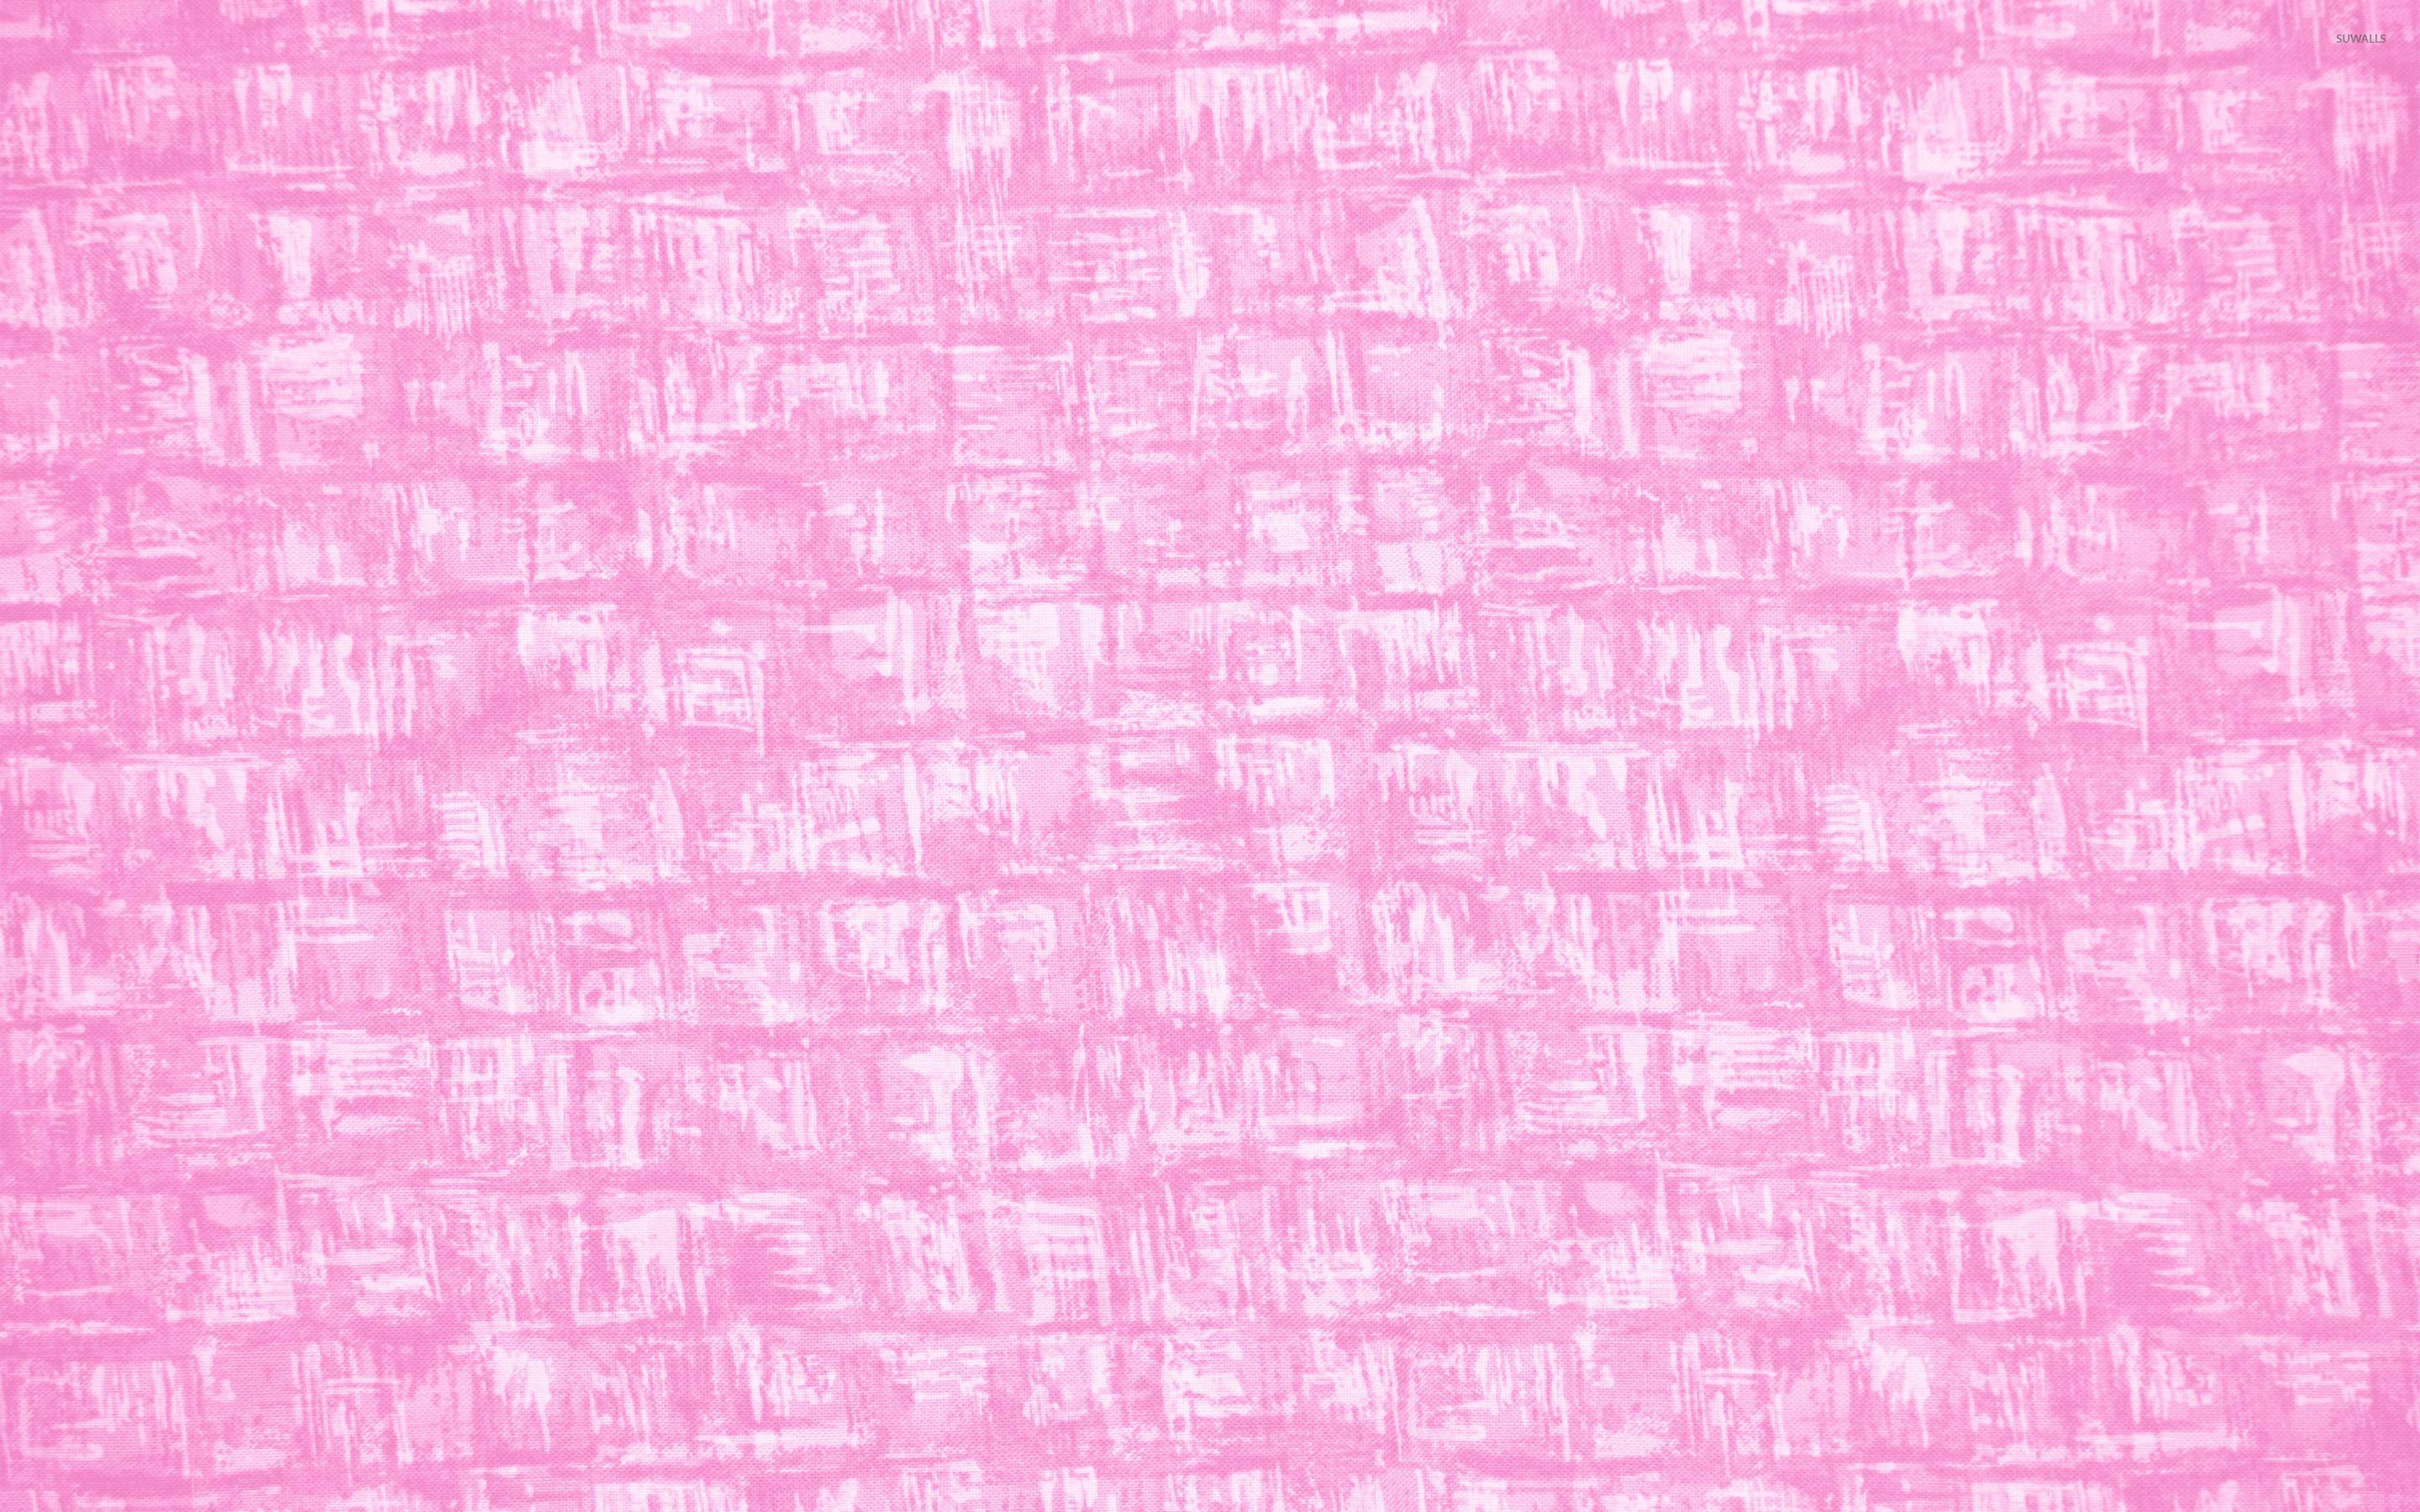 3969157 Pink Textured Wallpaper Images Stock Photos  Vectors   Shutterstock